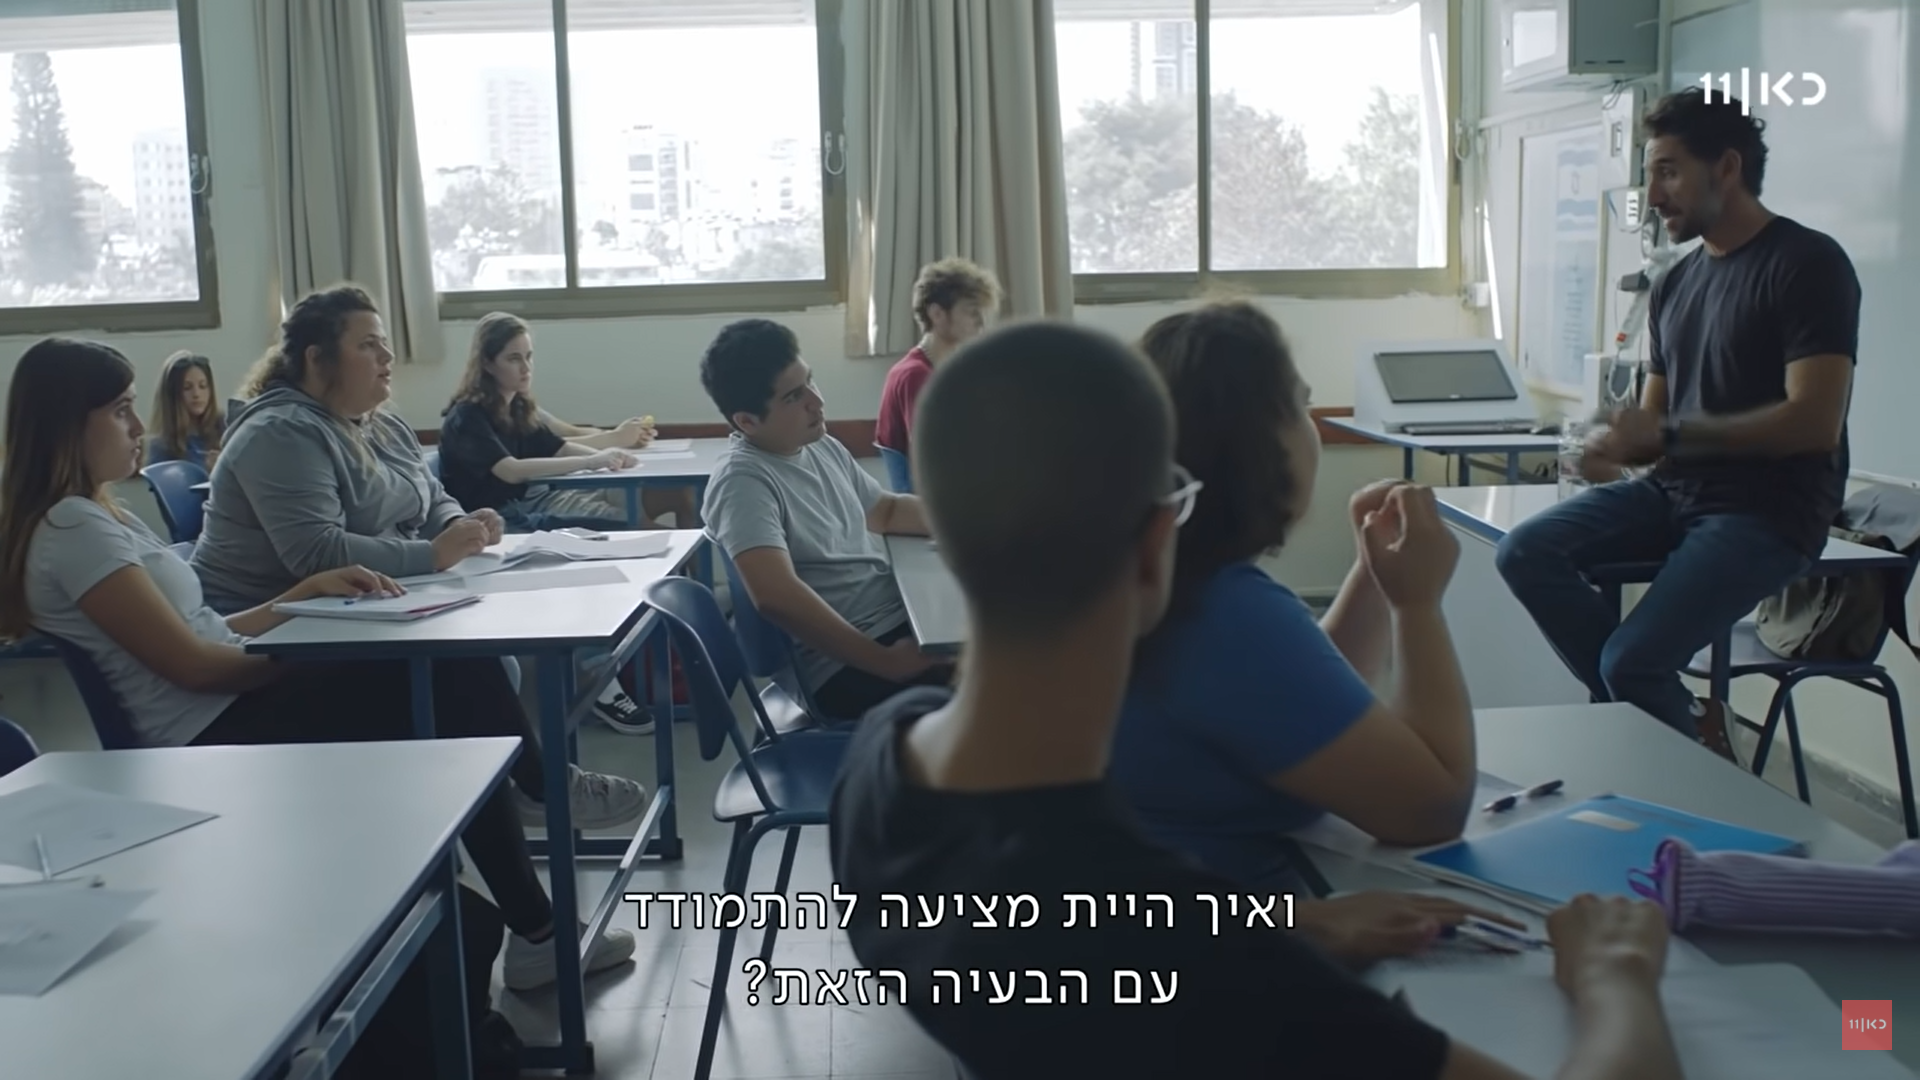 בשיעור אזרחות, המורה אמיר (דורון בן דוד) מלמד את התלמידים ויושב בקצה השולחן. ממולו יושבת התלמידה ליאן (מיה לנדסמן)